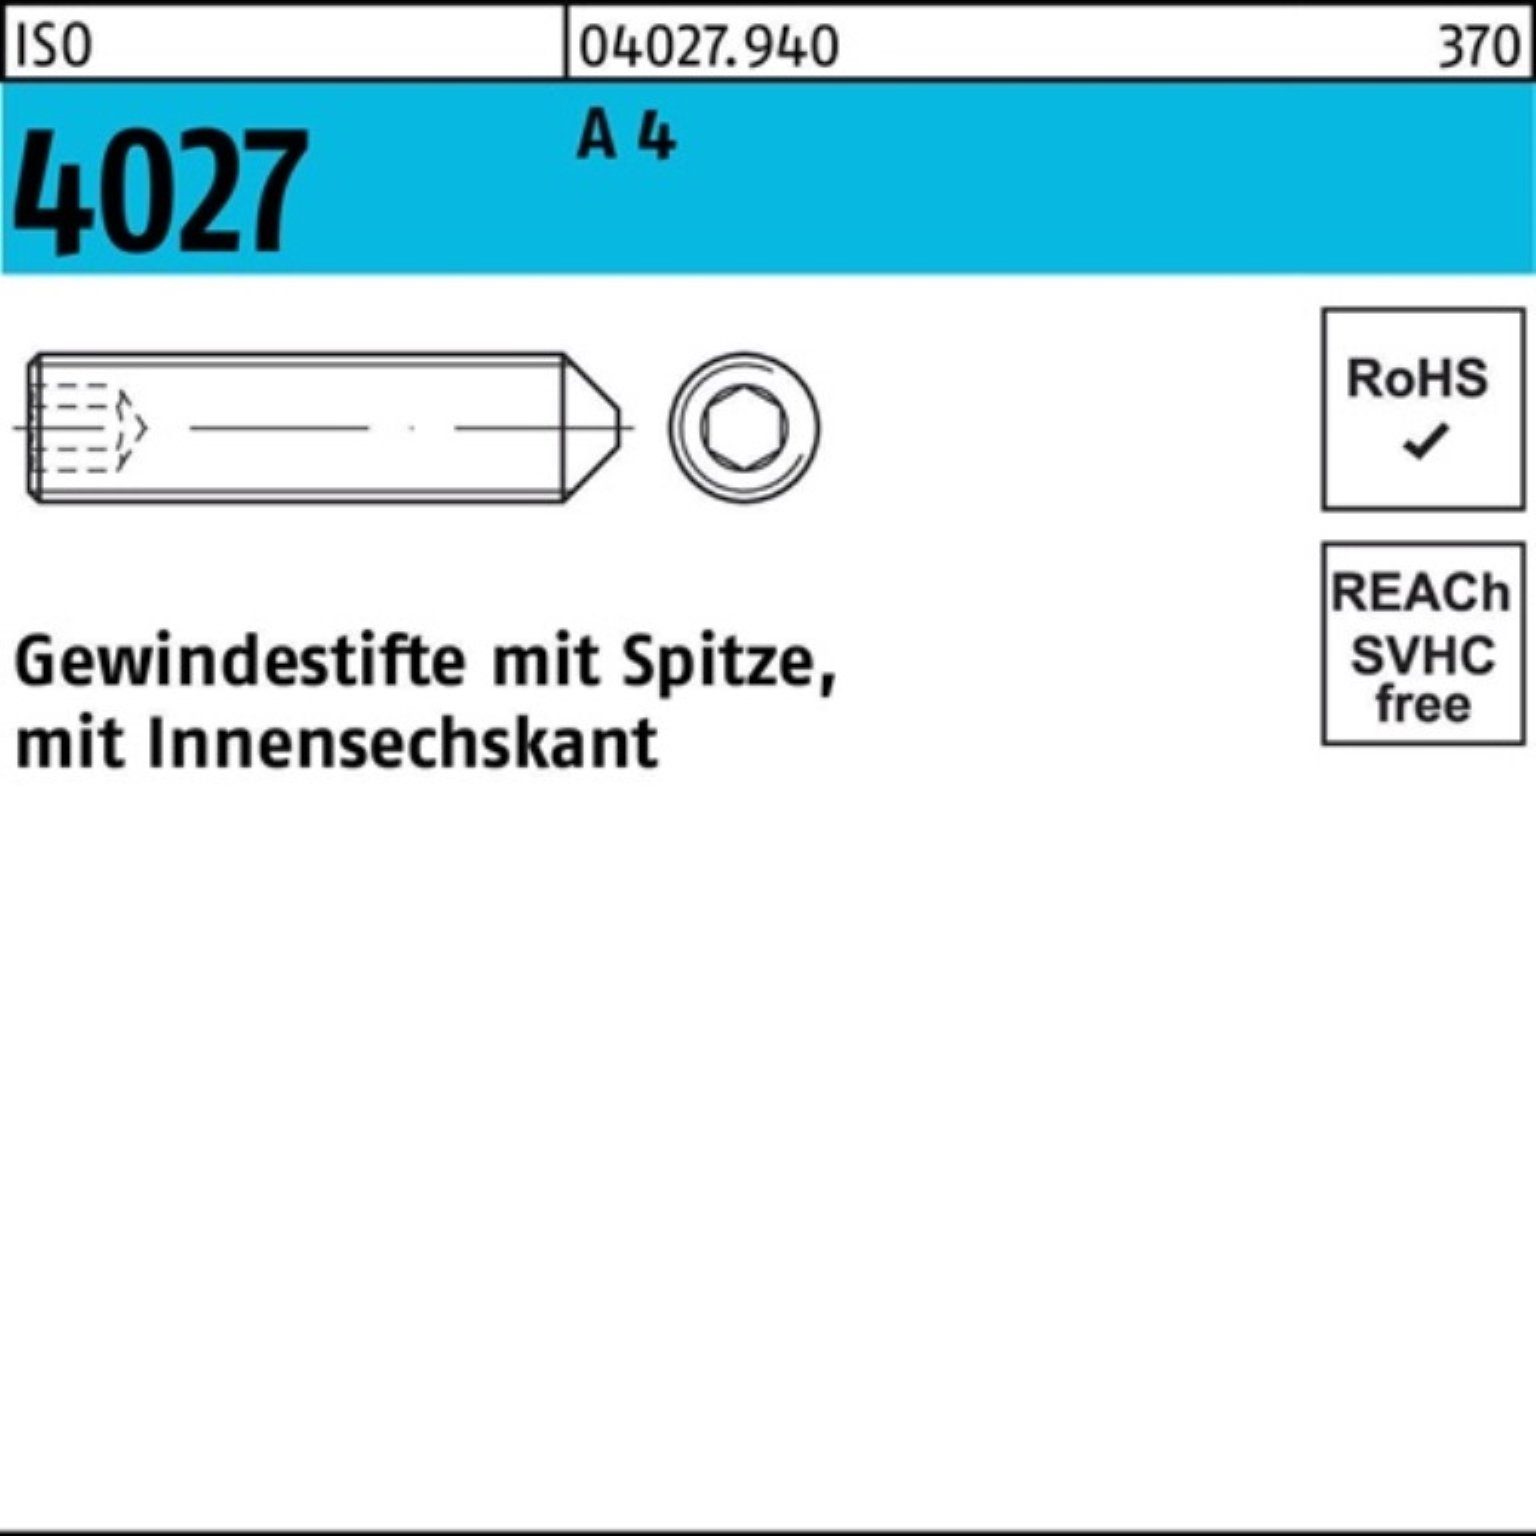 Reyher Gewindebolzen 100er M8x 4027 A 4 ISO Stüc Pack Spitze/Innen-6kt 100 45 Gewindestift